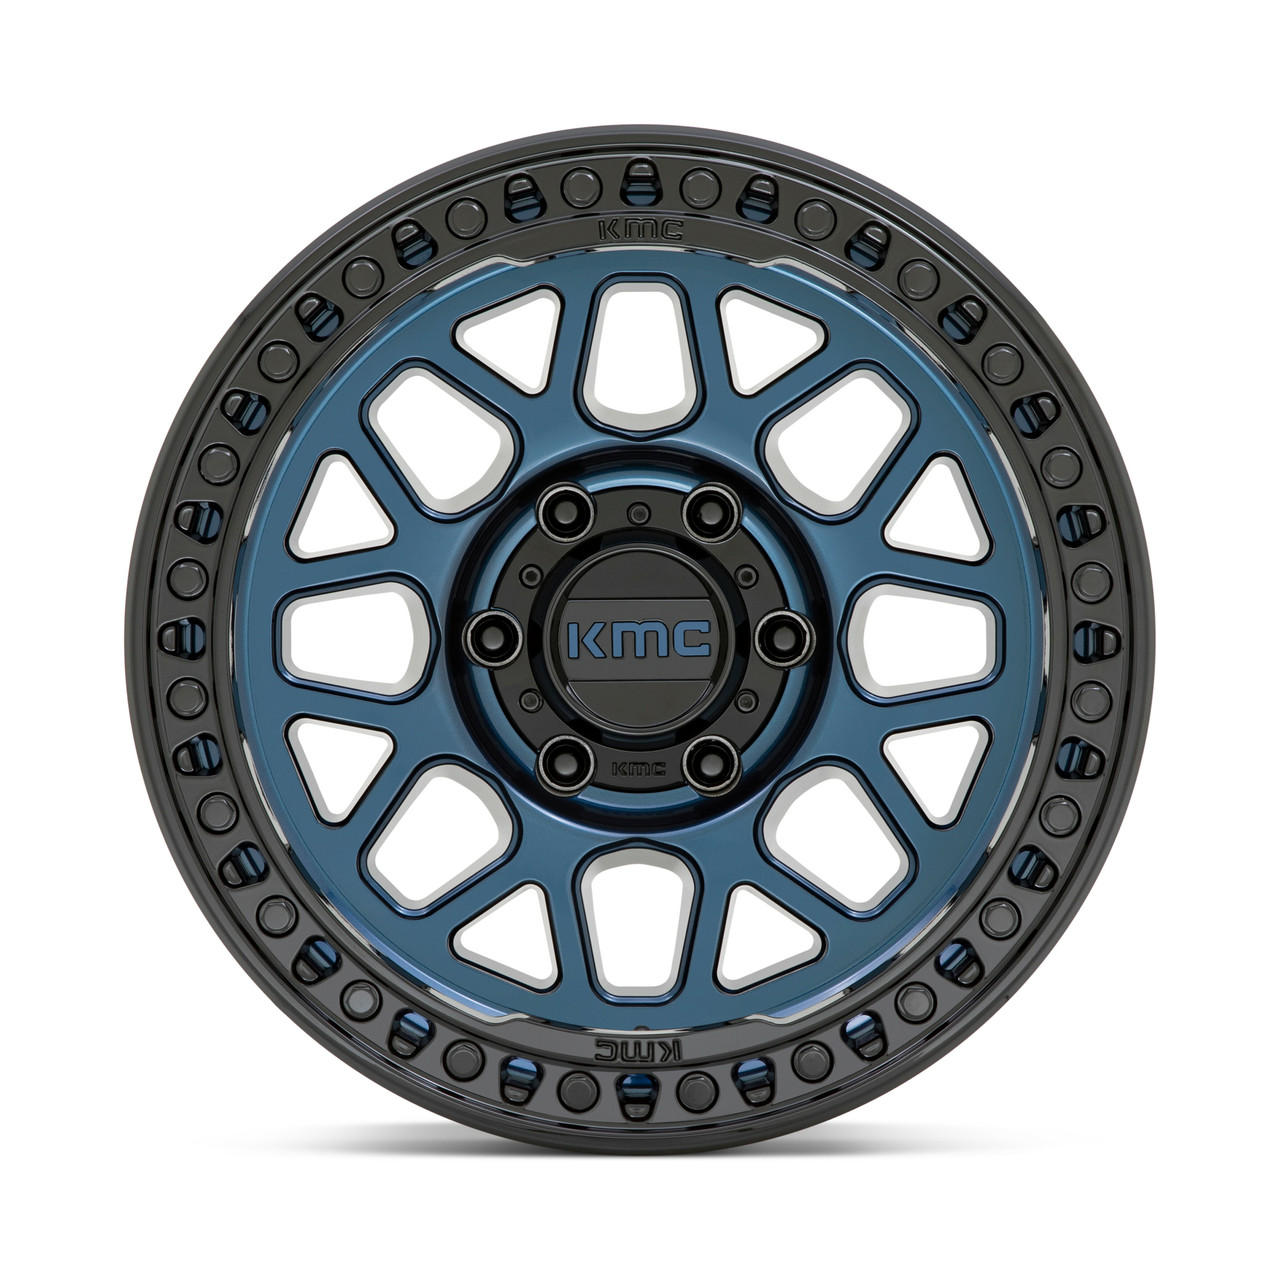 KMC KM549 GRS 18x8.5 8x170 Midnight Blue Gloss Black Lip Wheel 18" 0mm Truck Rim